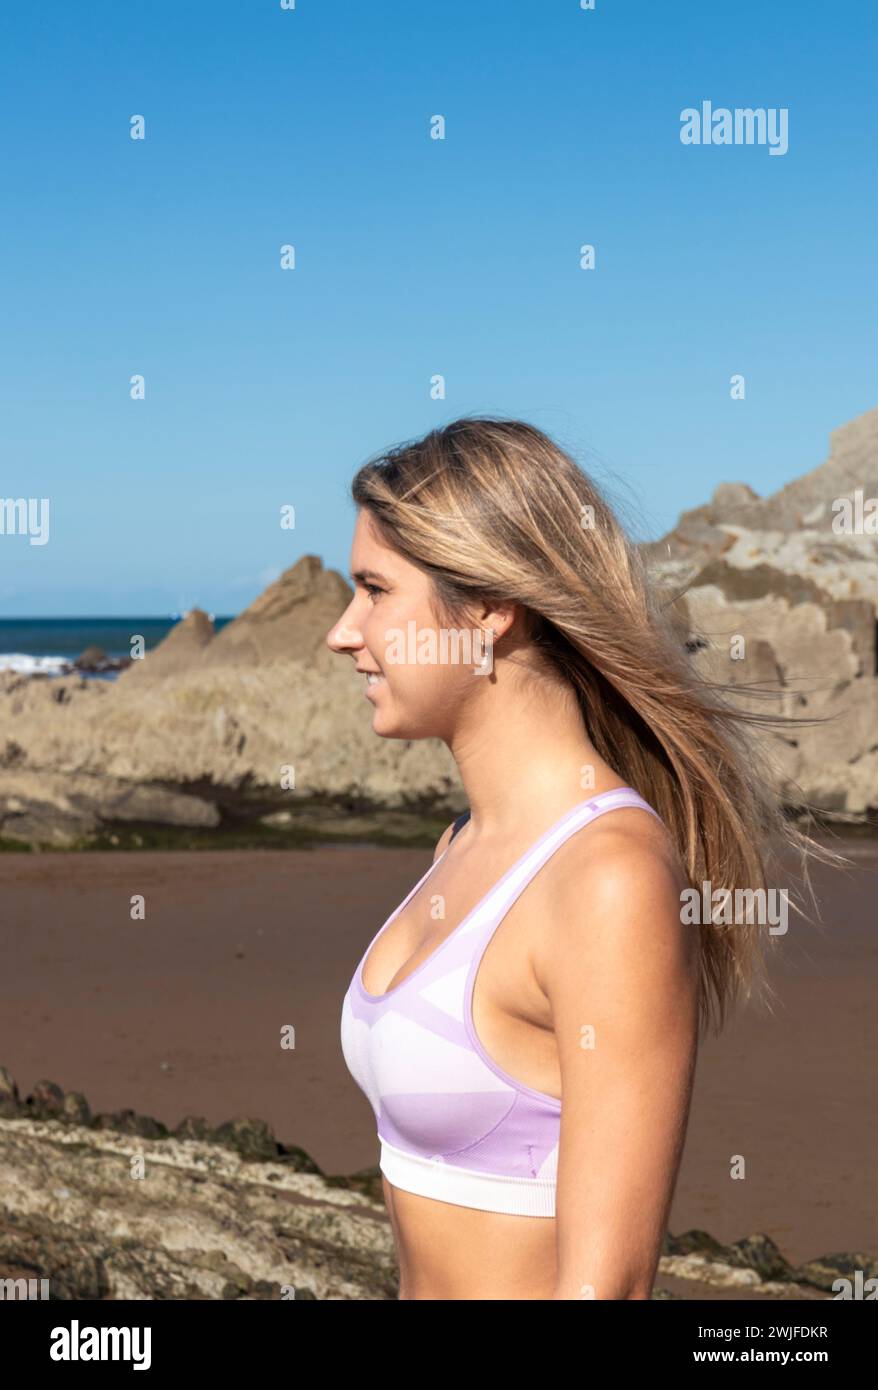 jolie jeune femme blonde portant un soutien-gorge de sport violet Banque D'Images